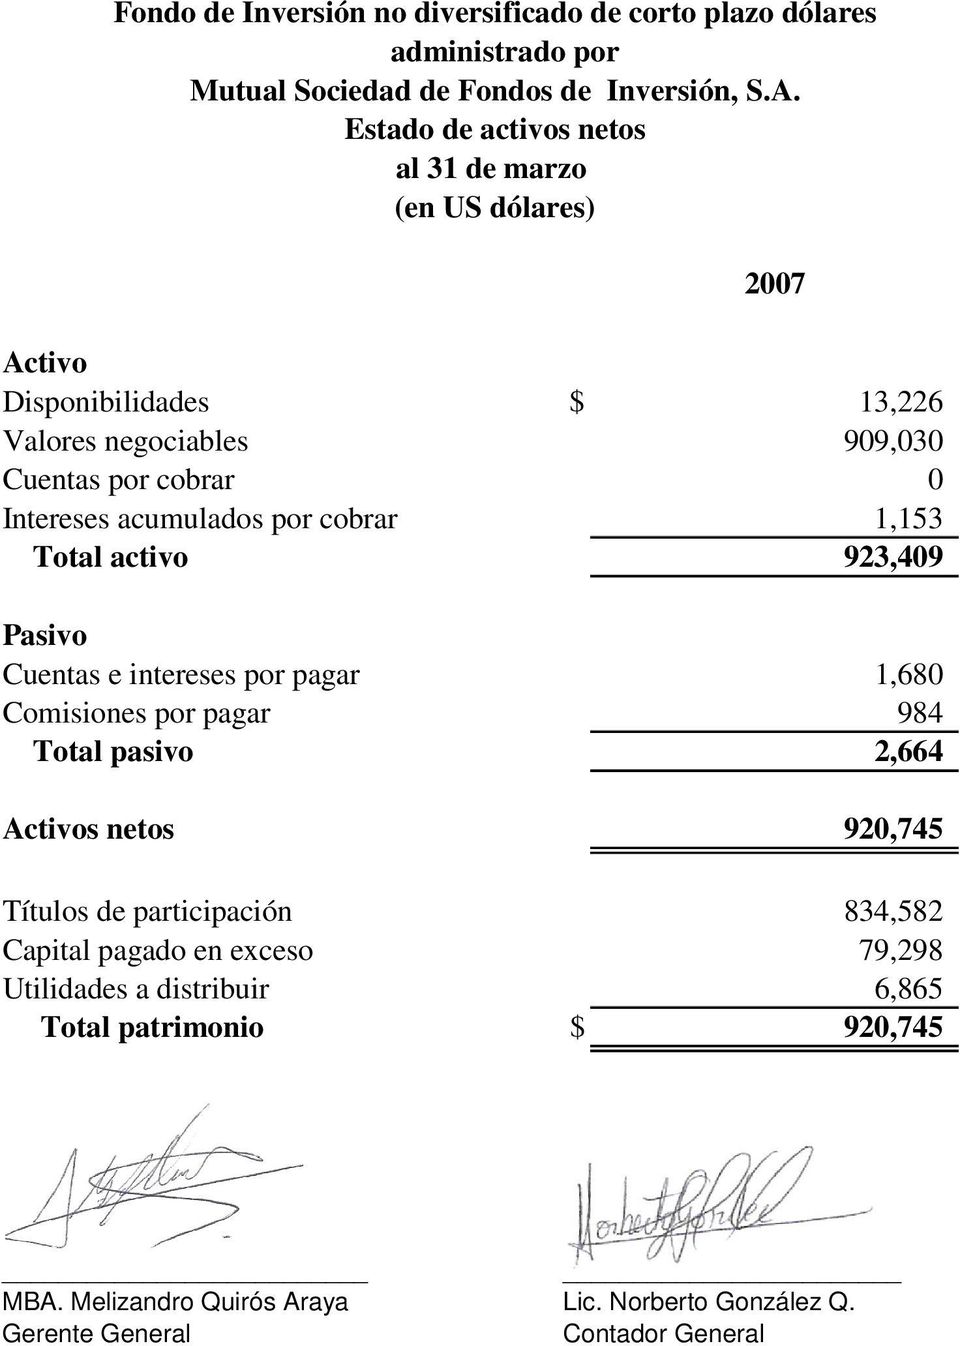 cobrar 0 Intereses acumulados por cobrar 1,153 Total activo 923,409 Pasivo Cuentas e intereses por pagar 1,680 Comisiones por pagar 984